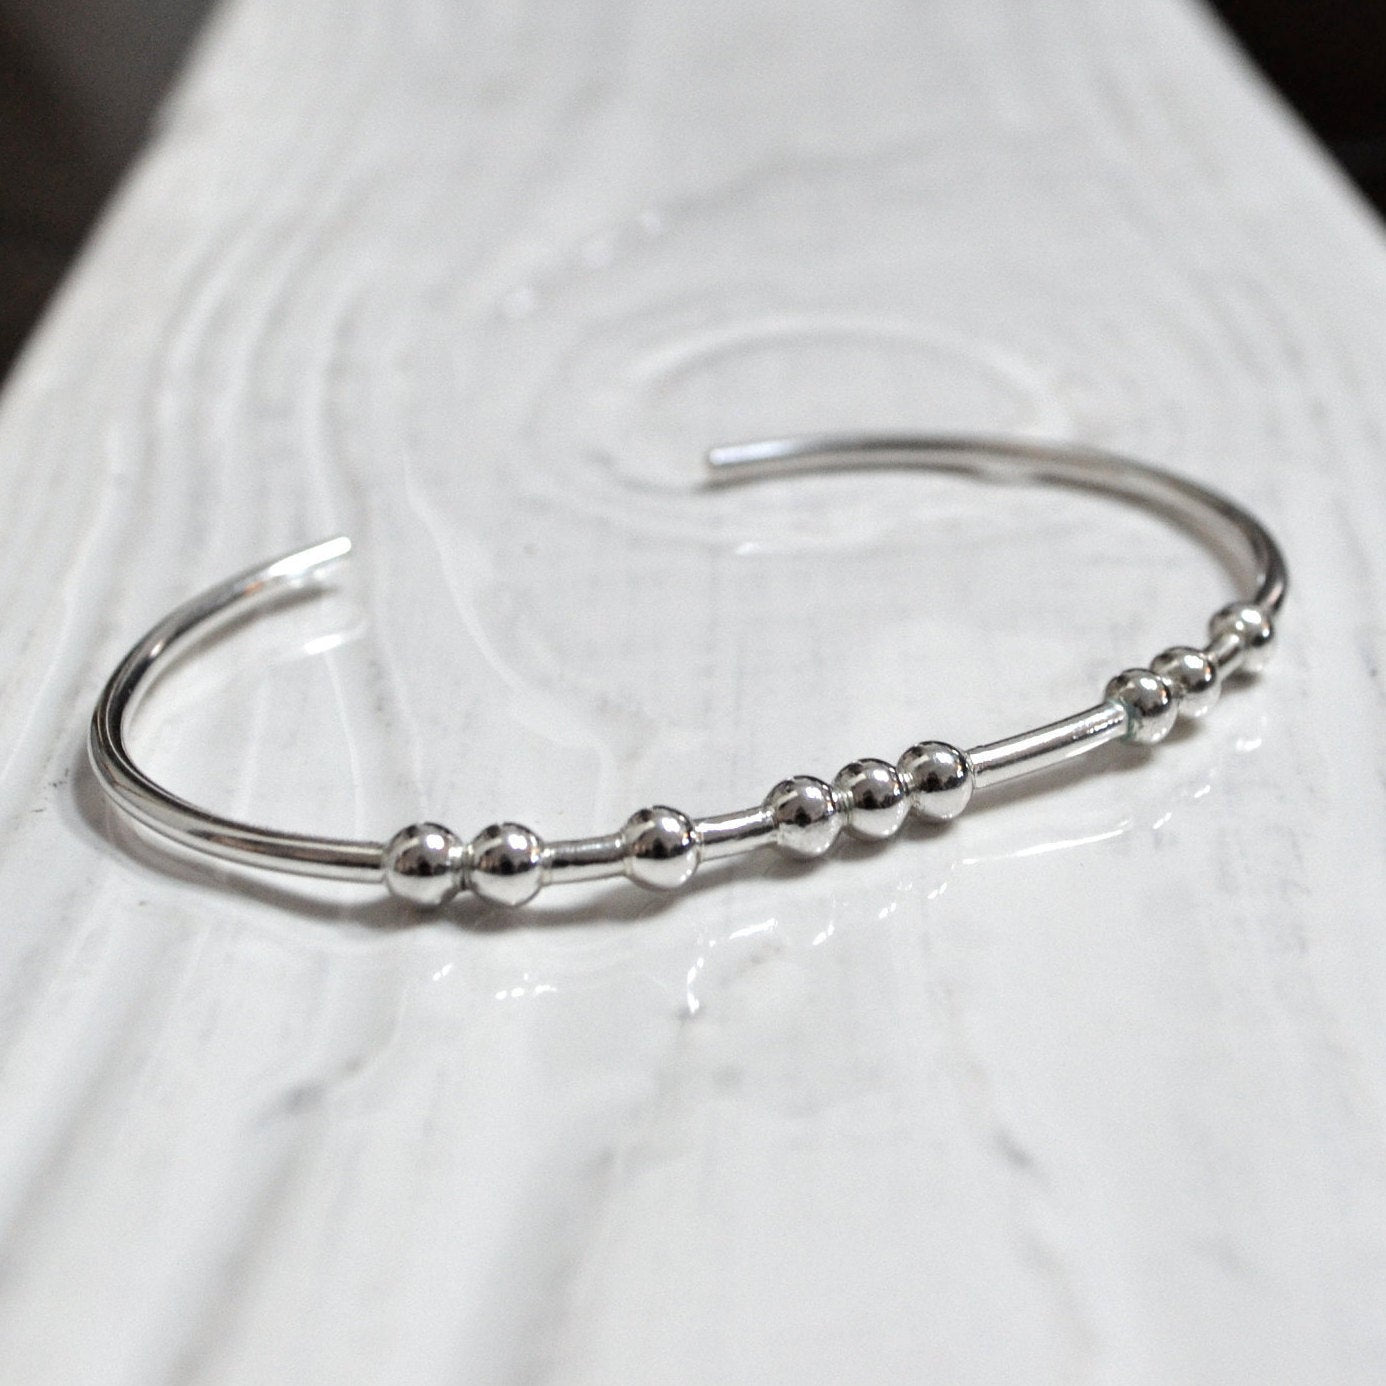 Custom morse code bracelet in silver